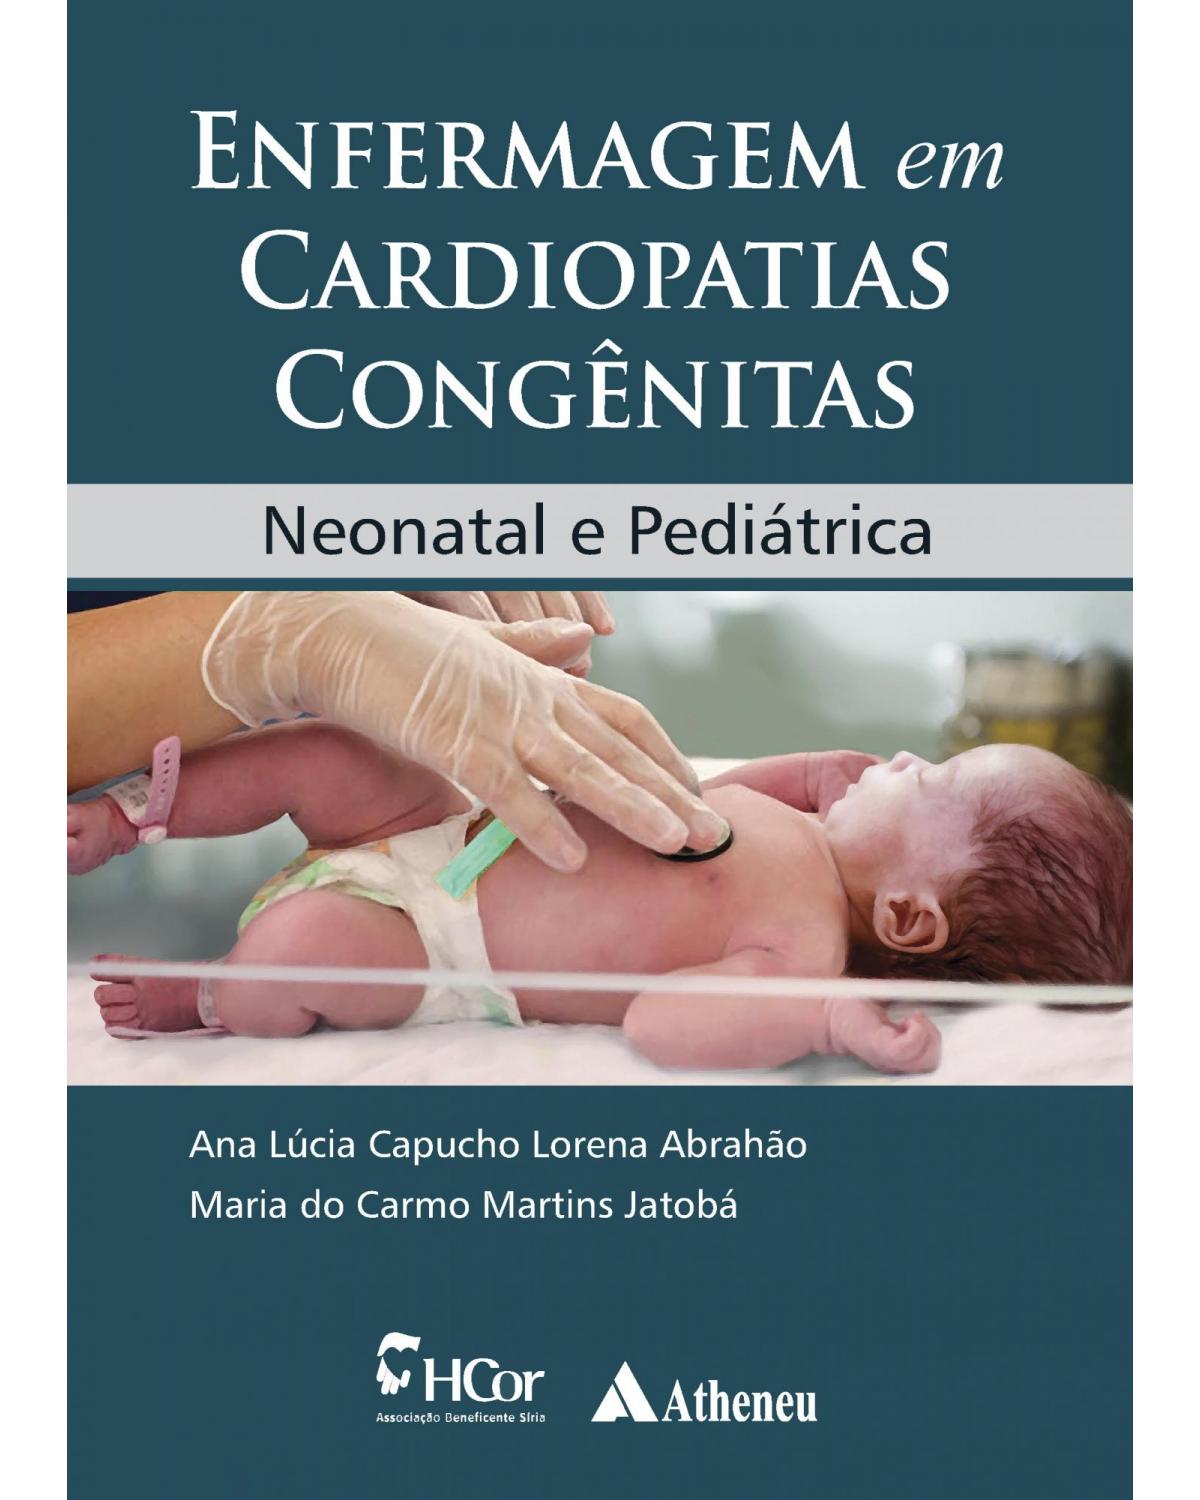 Enfermagem em cardiopatias congênitas - neonatal e pediátrica - 1ª Edição | 2018